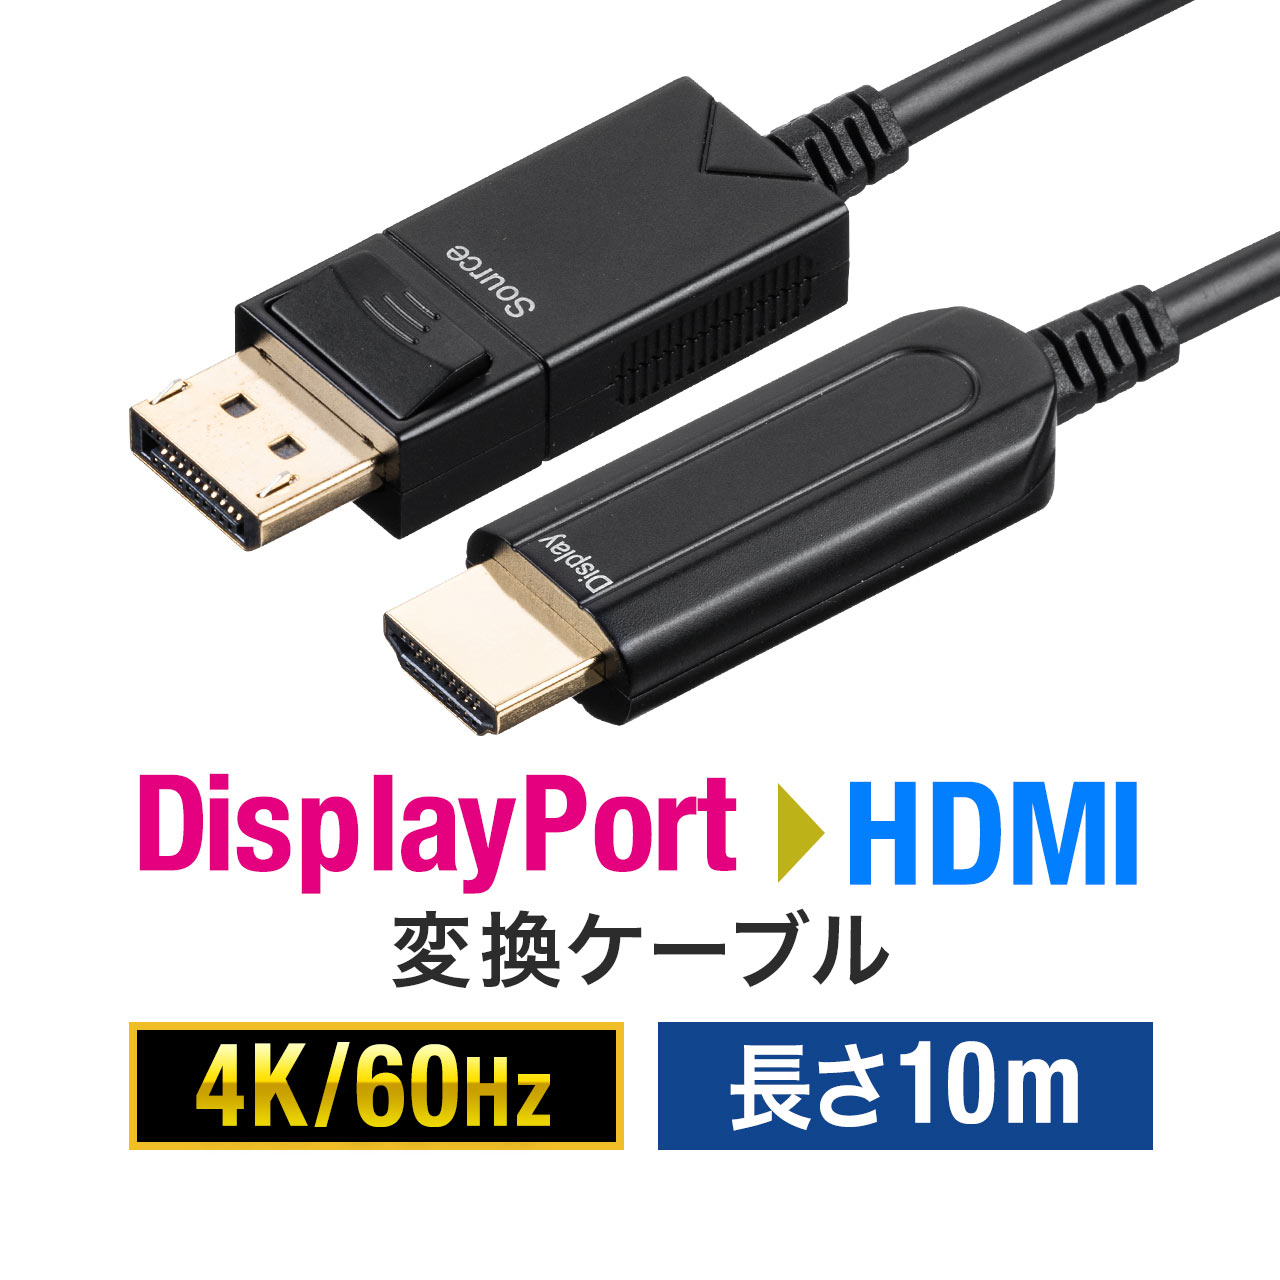 【楽天市場】DisplayPort to HDMI 変換 光ファイバーケーブル 10m